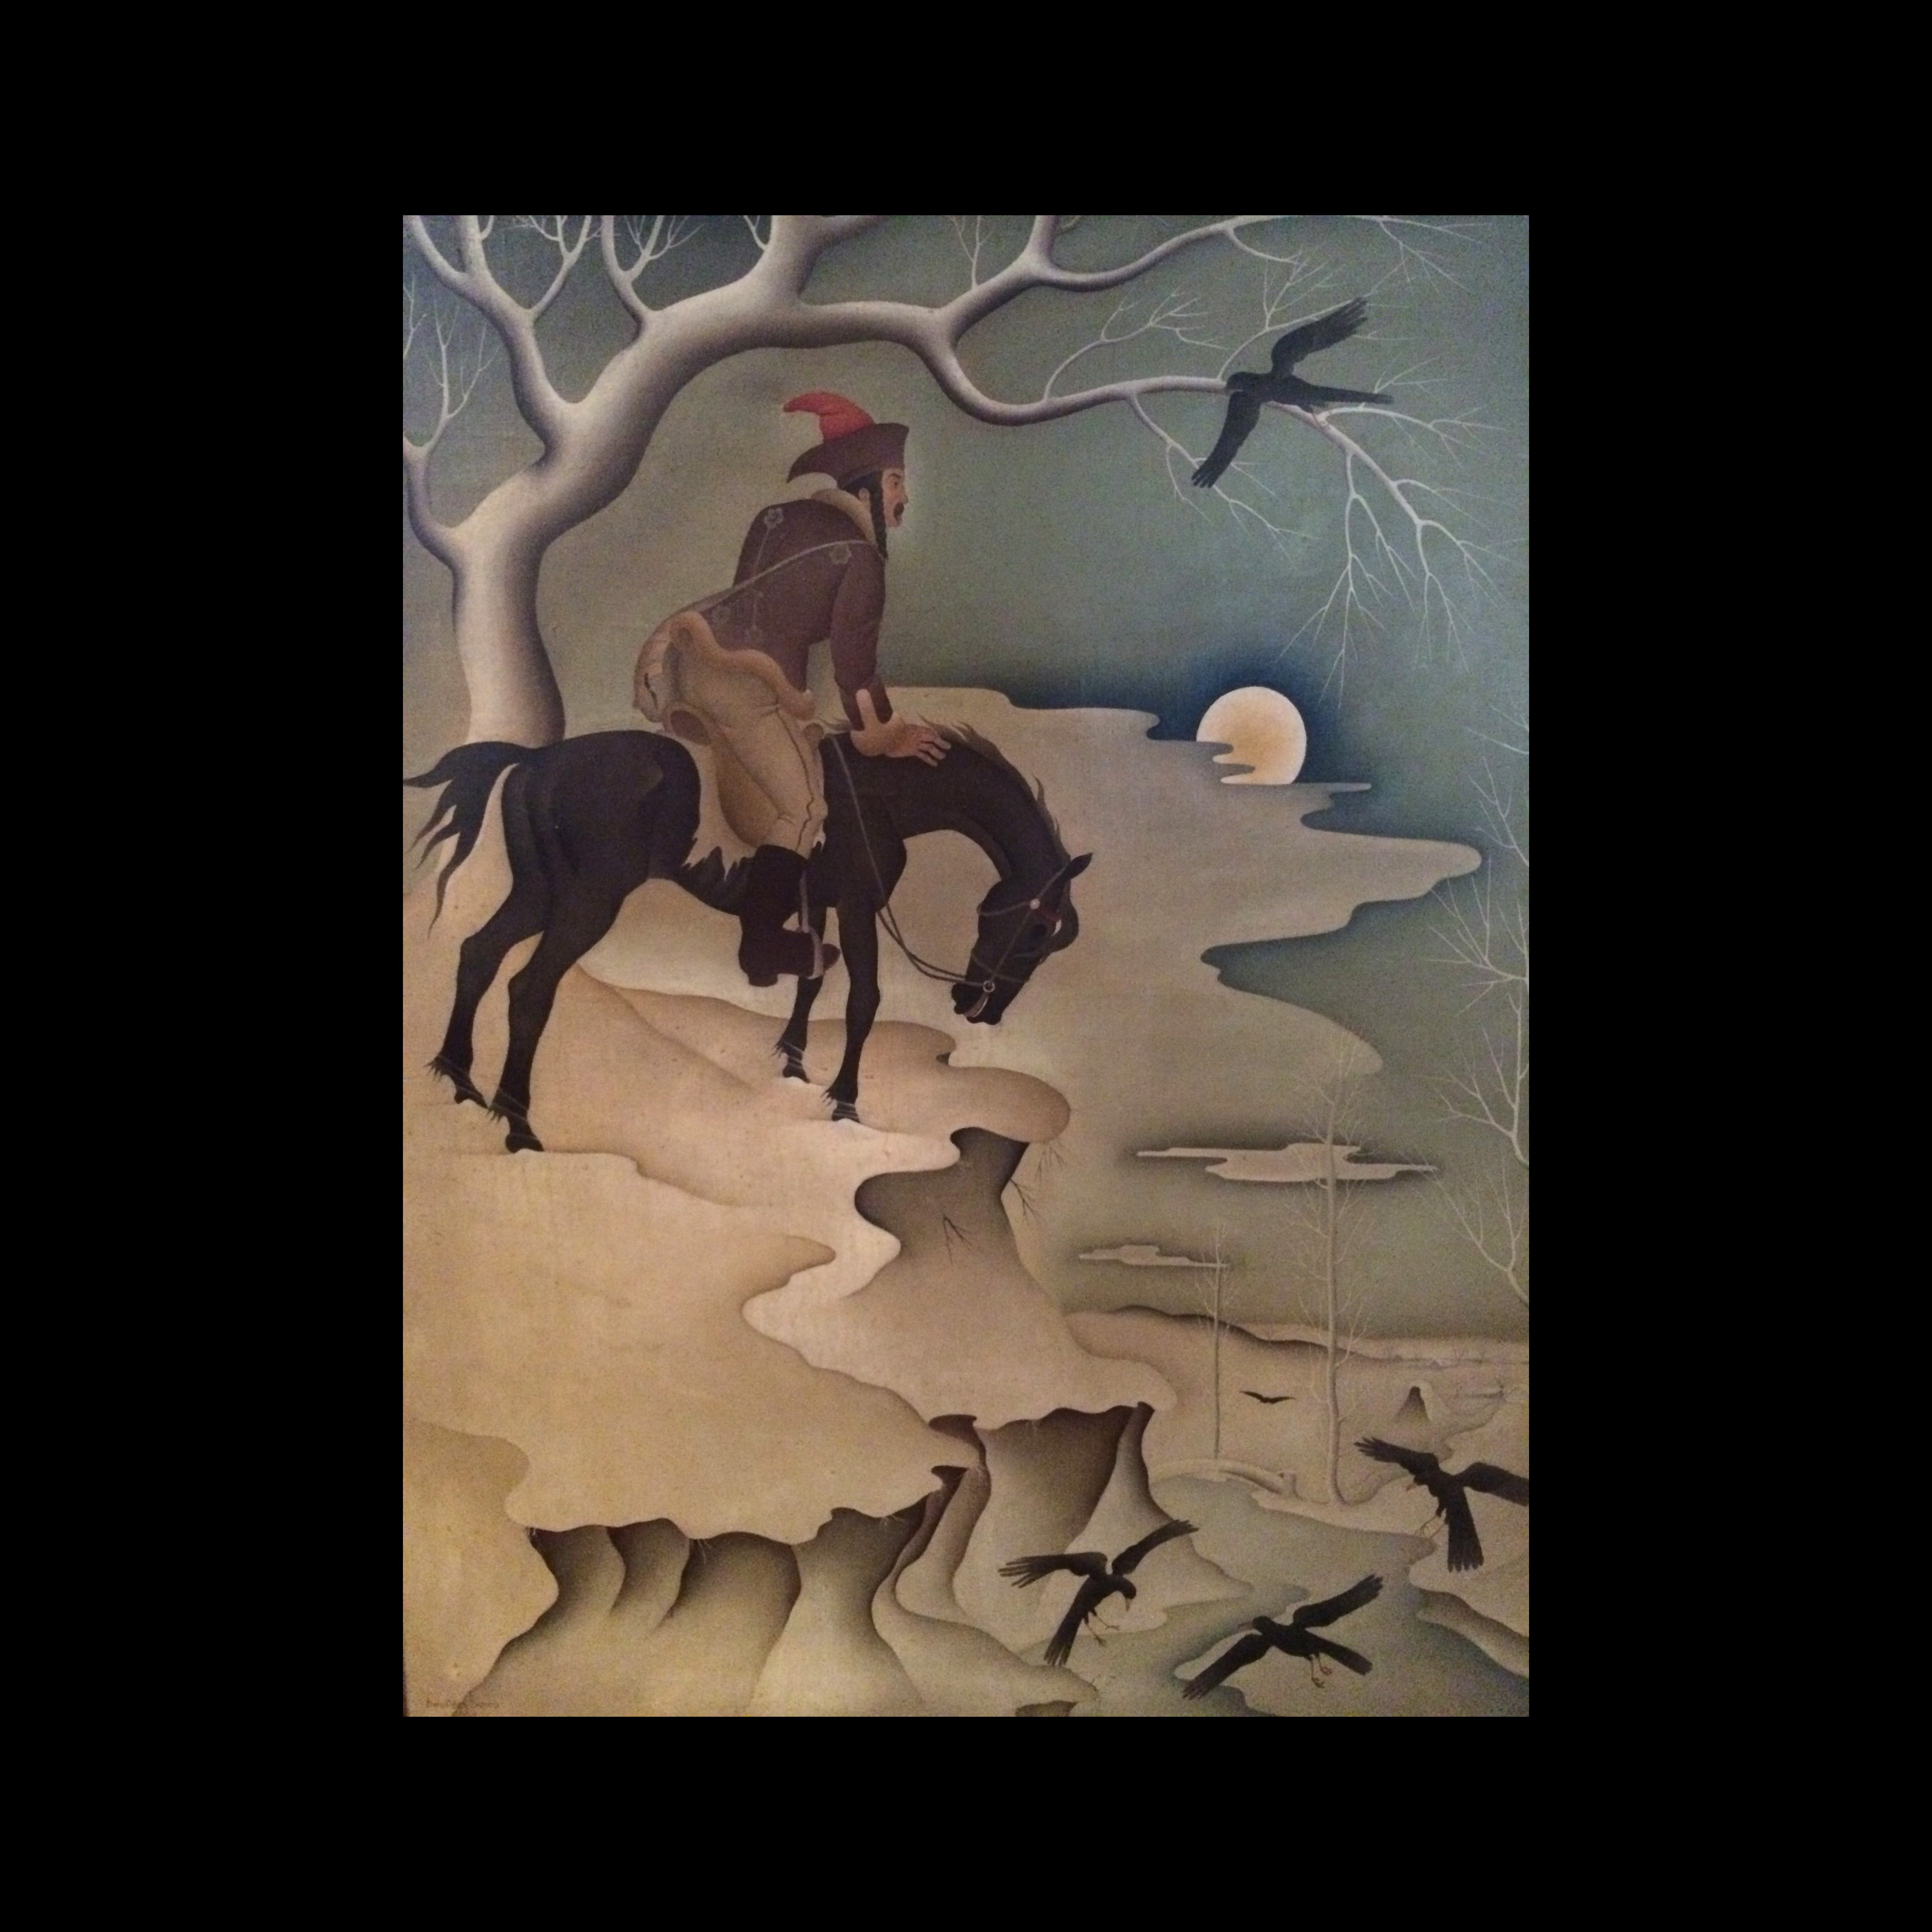 Barna Basilides “The Lone Rider”